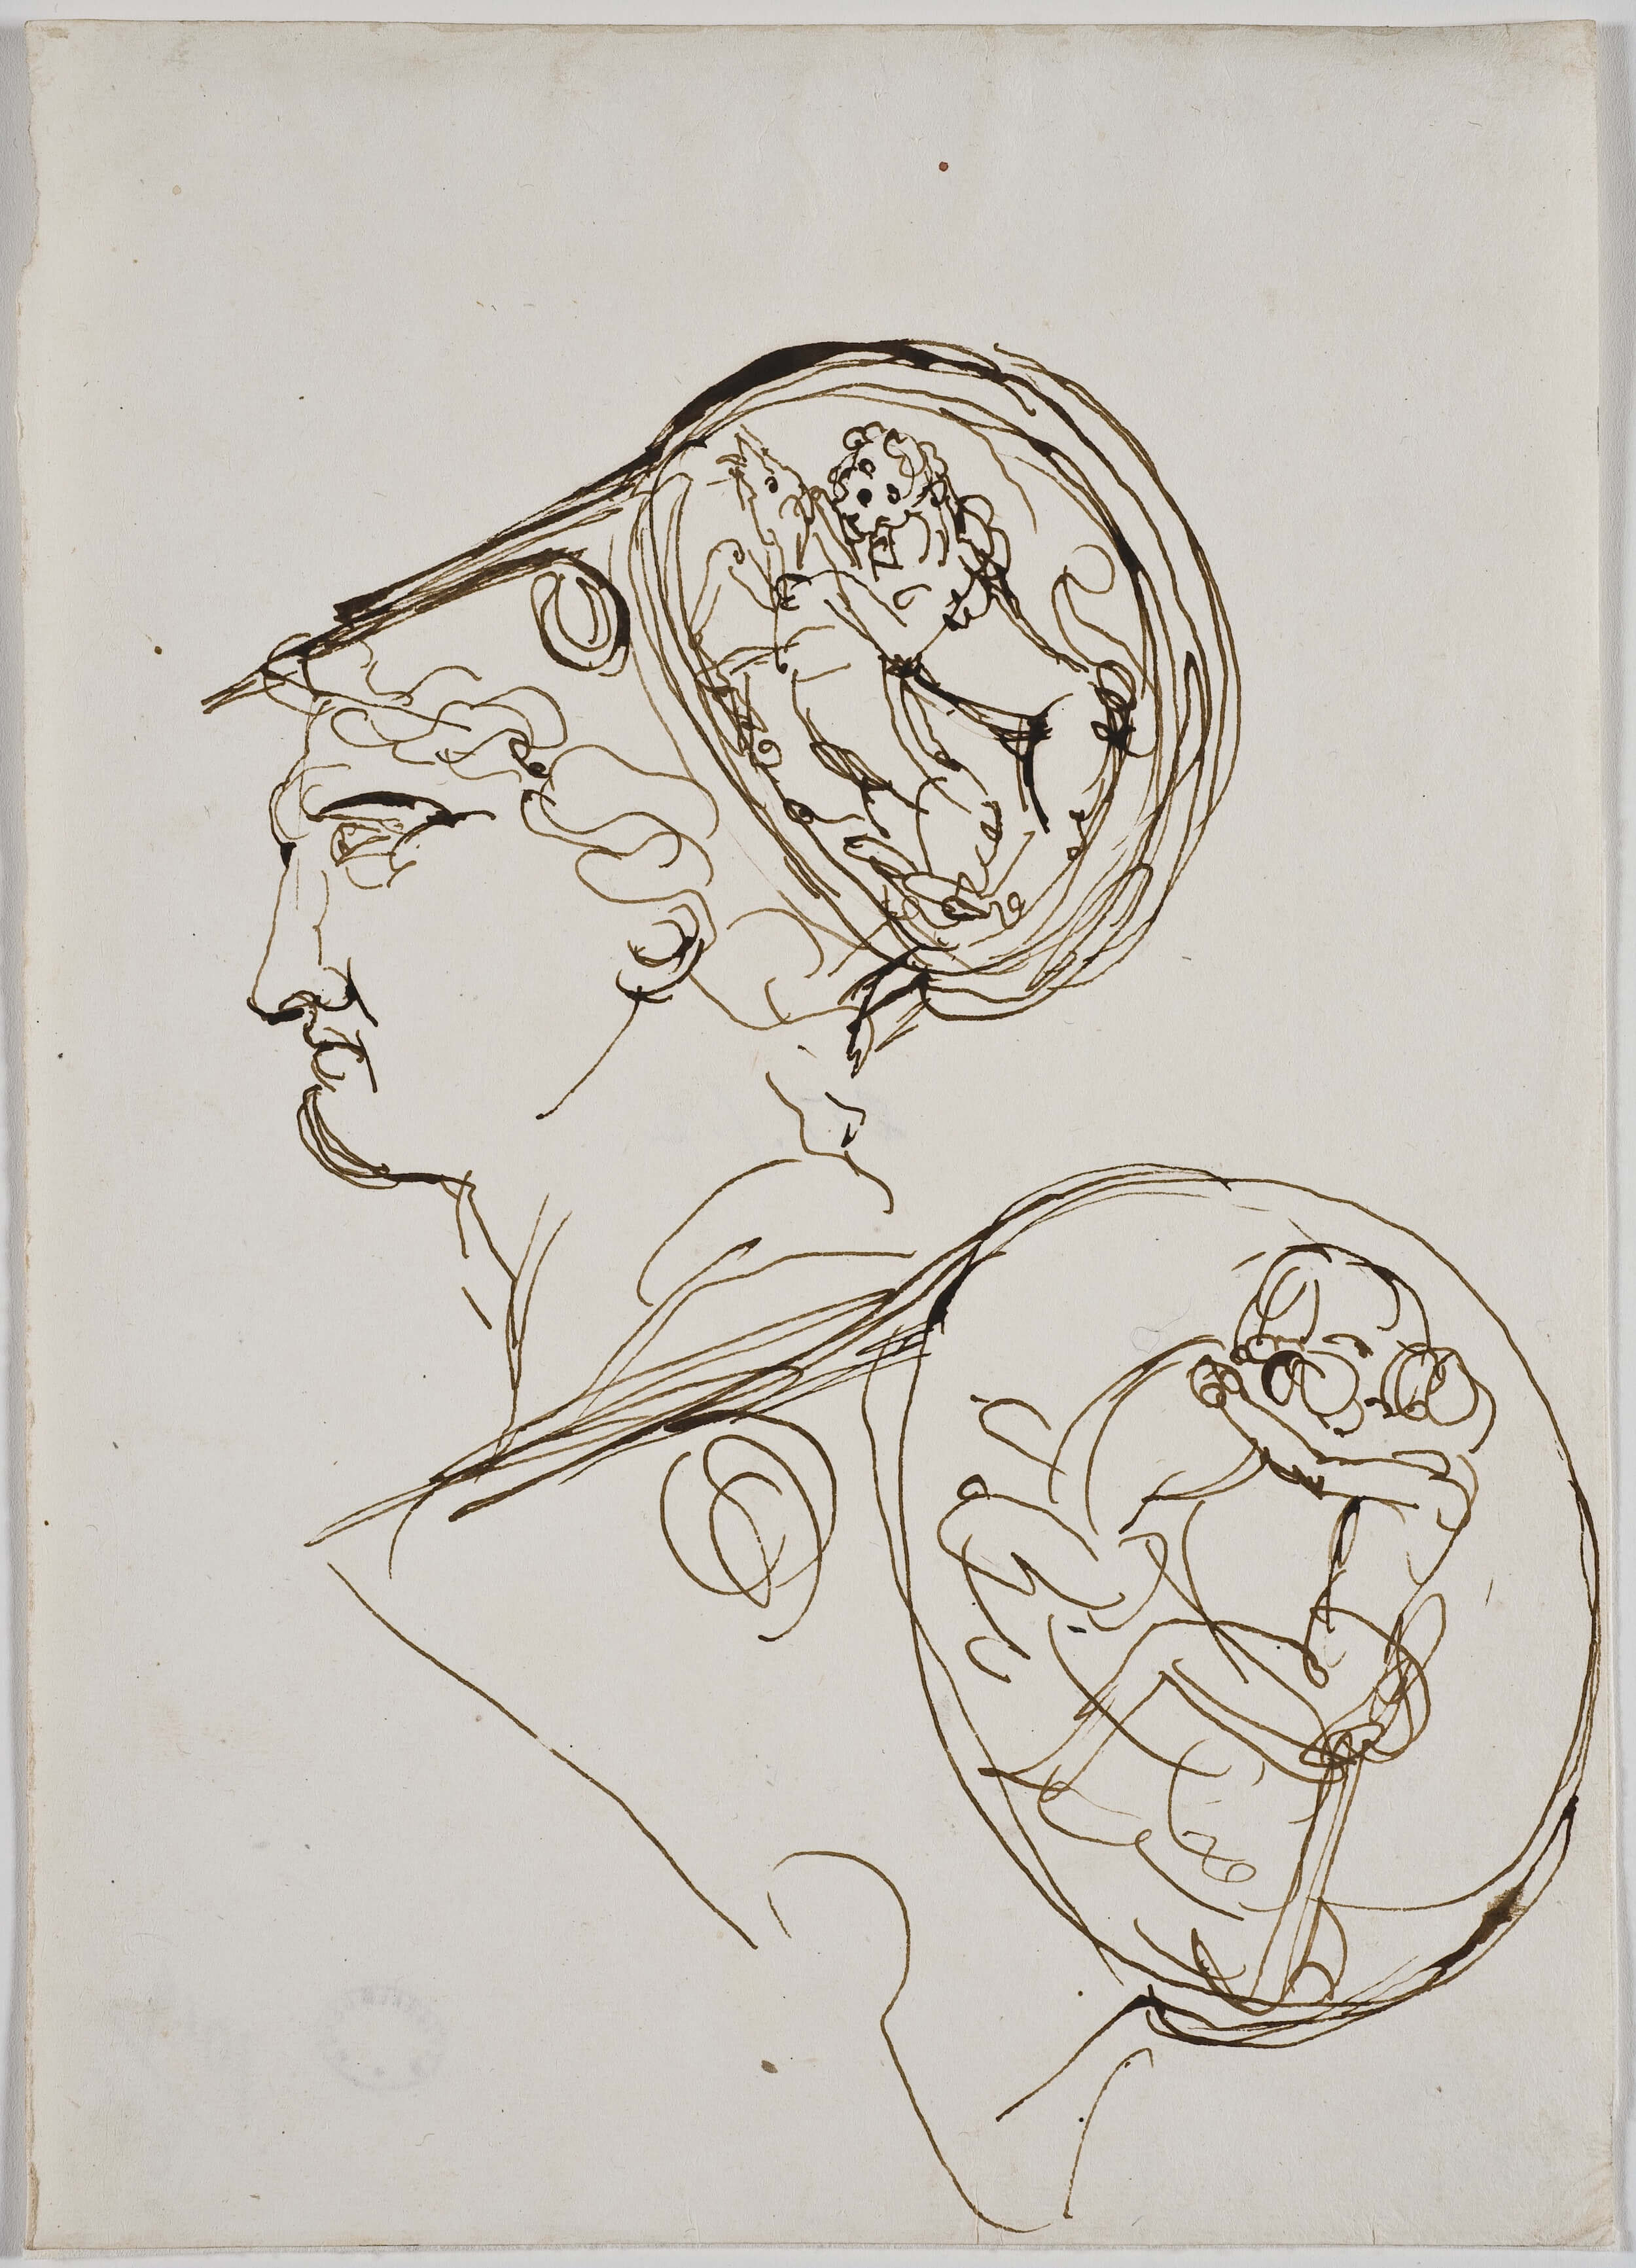   Fig.8  Johan Tobias Sergel (1740–1814), Diomedes, två skisser av hjälm och huvud i profil. Penna och brunt bläck på papper, 278 x 107 mm. Nationalmuseum, NMH 1019/1875. Foto: Erik Cornelius/Nationalmuseum. 